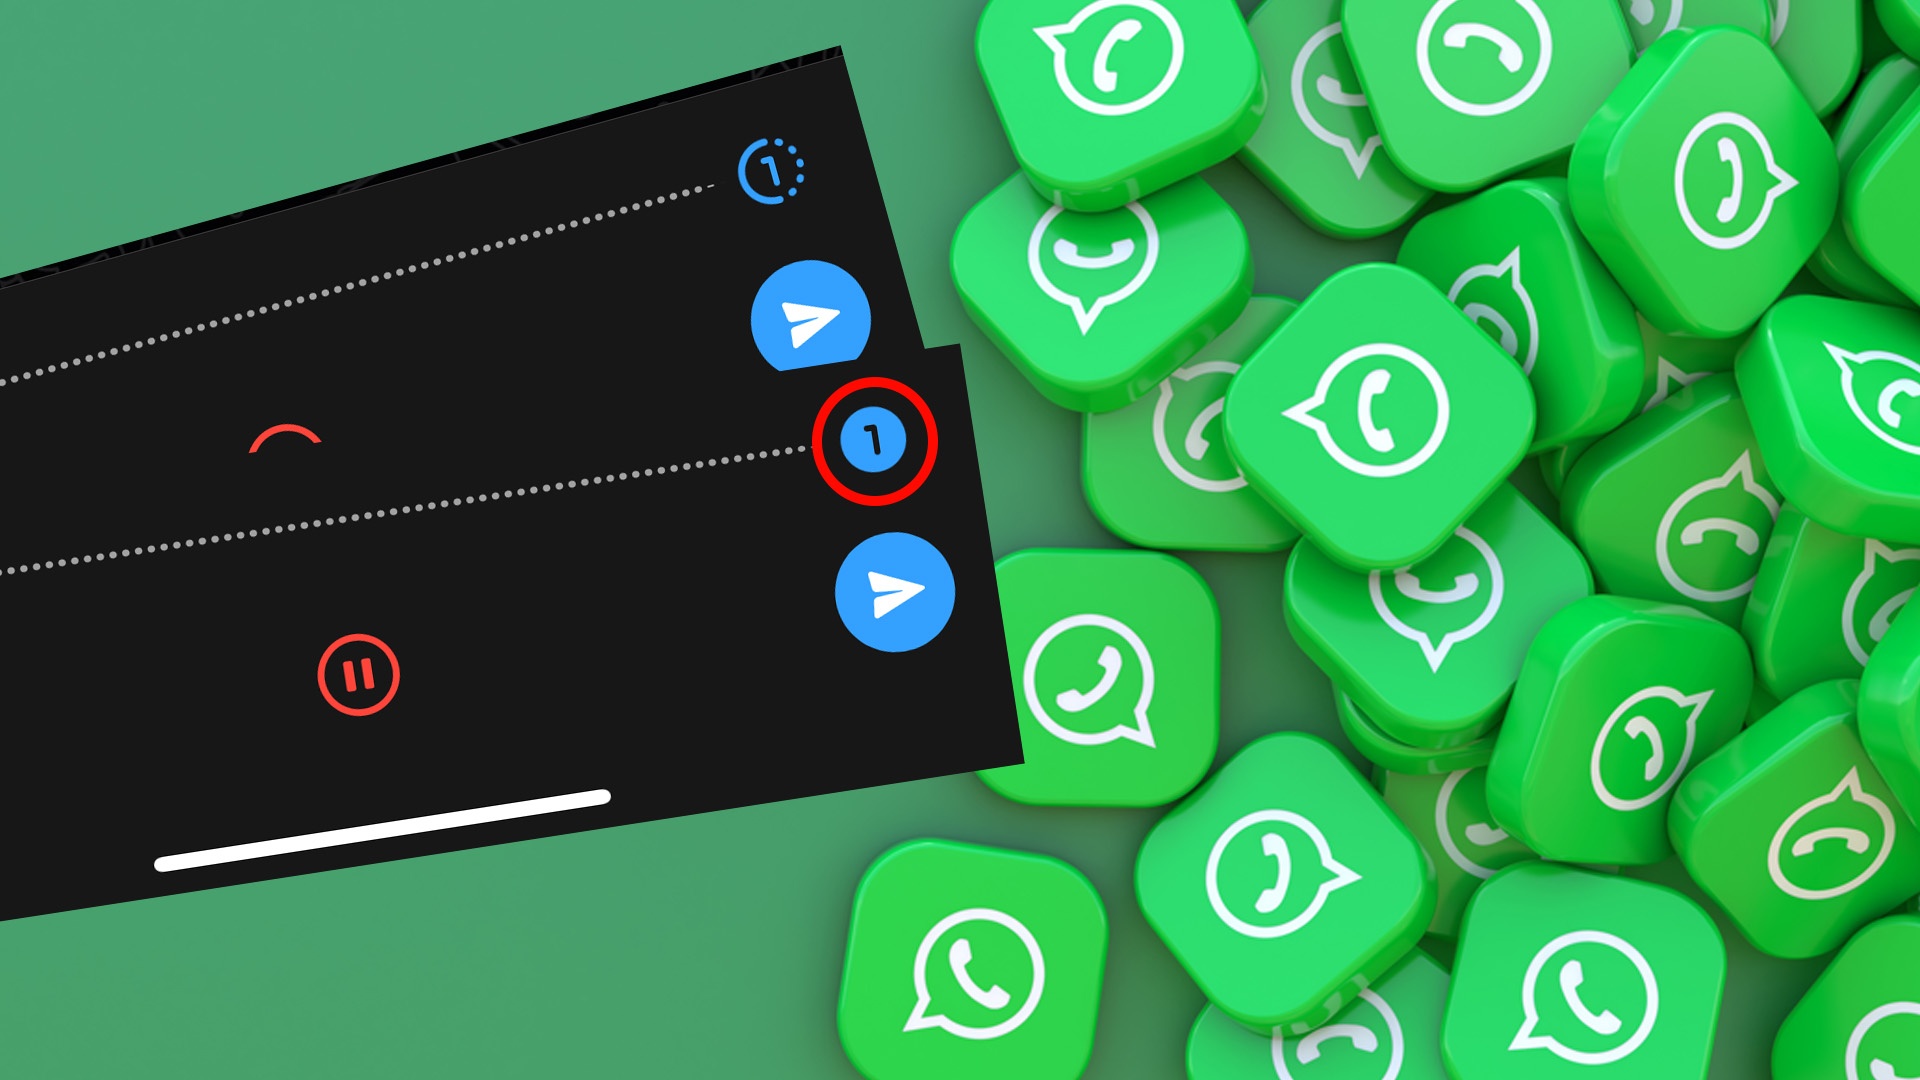 #WhatsApp-Sprachnachrichten: Was bedeutet die »1« neben der Aufzeichnung?